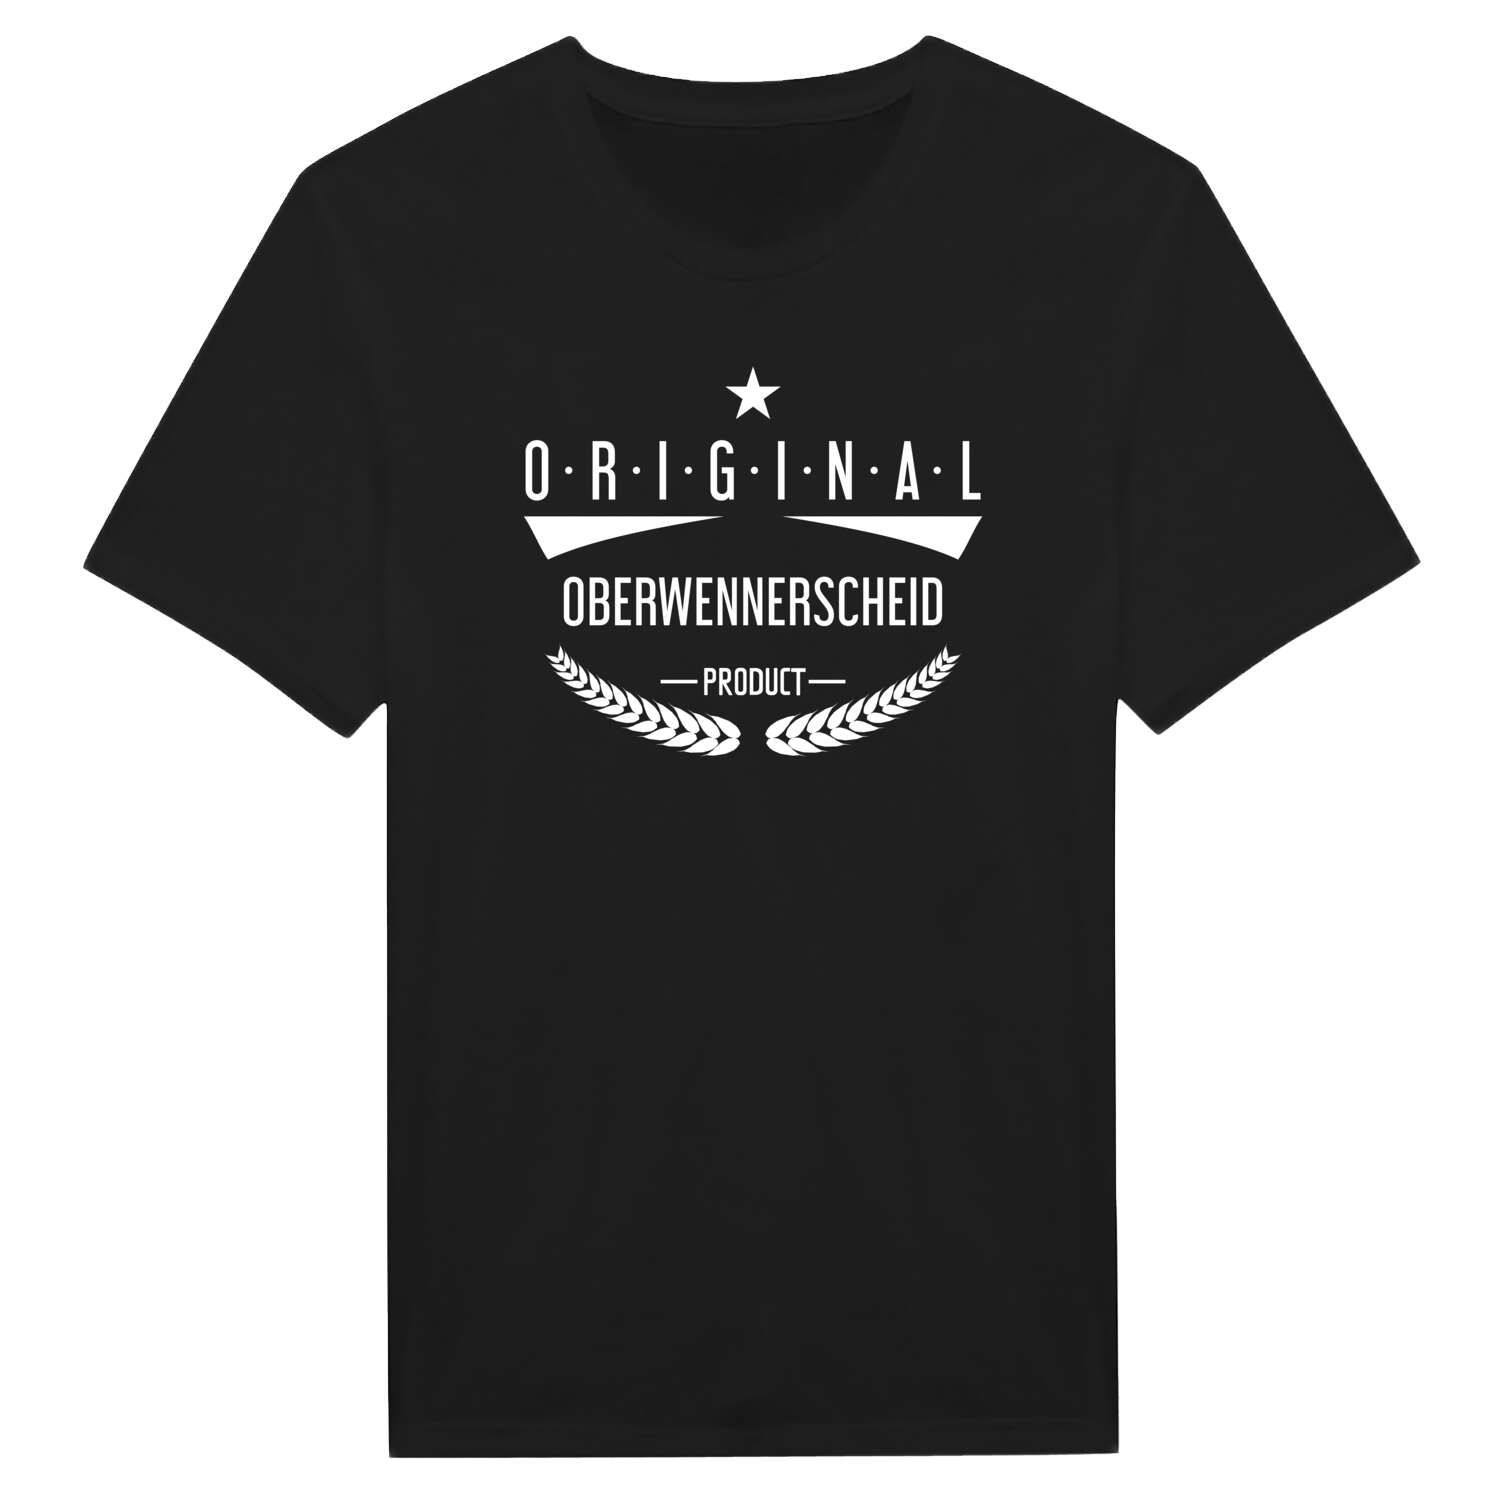 Oberwennerscheid T-Shirt »Original Product«